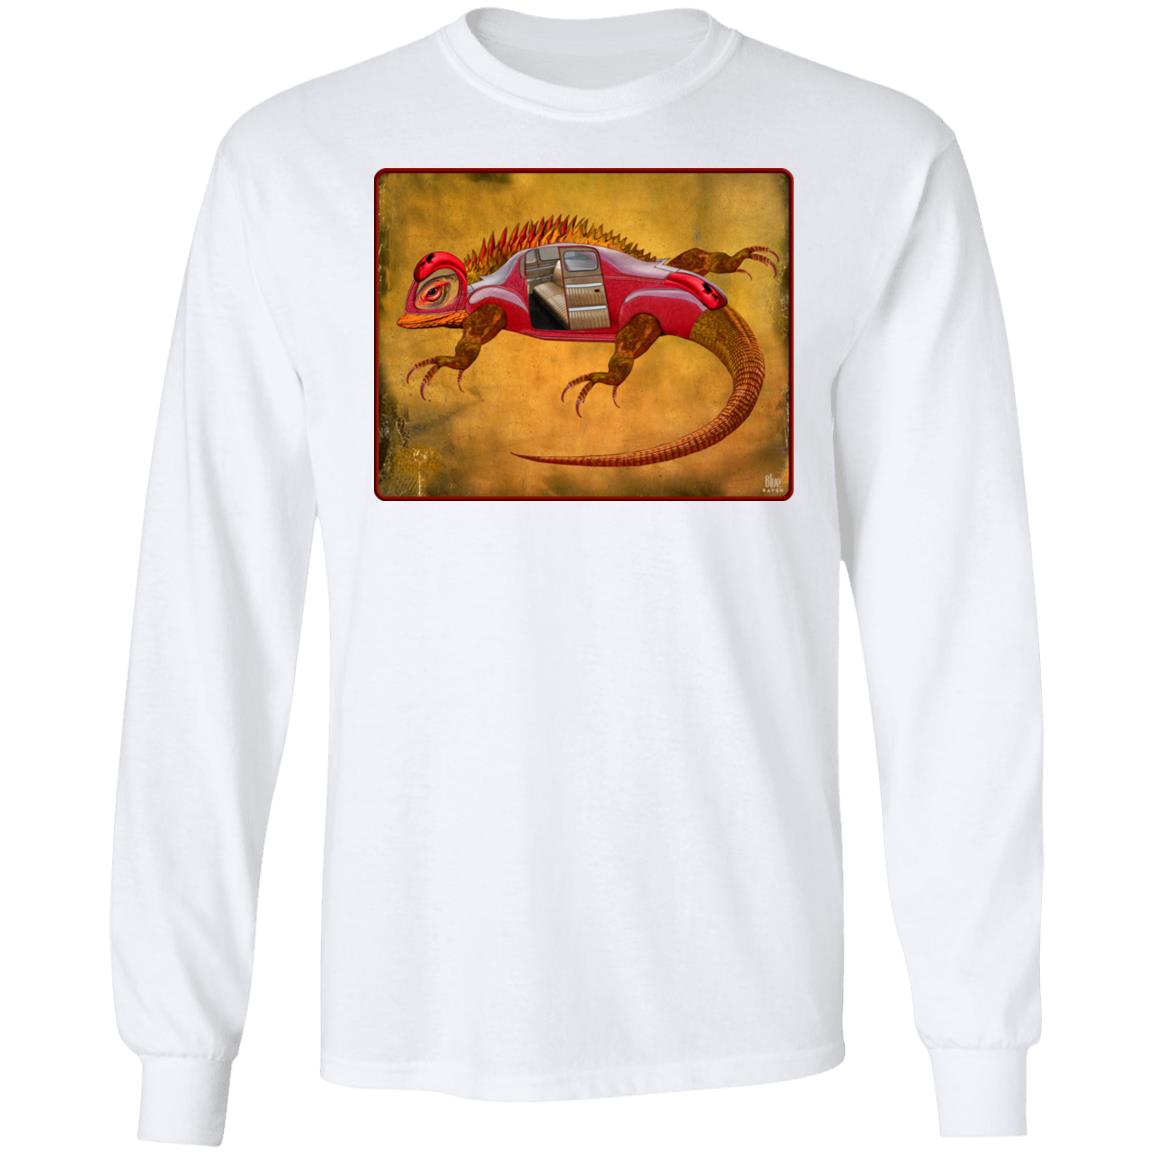 Uber Lizard - Red - Men's Long Sleeve T-Shirt